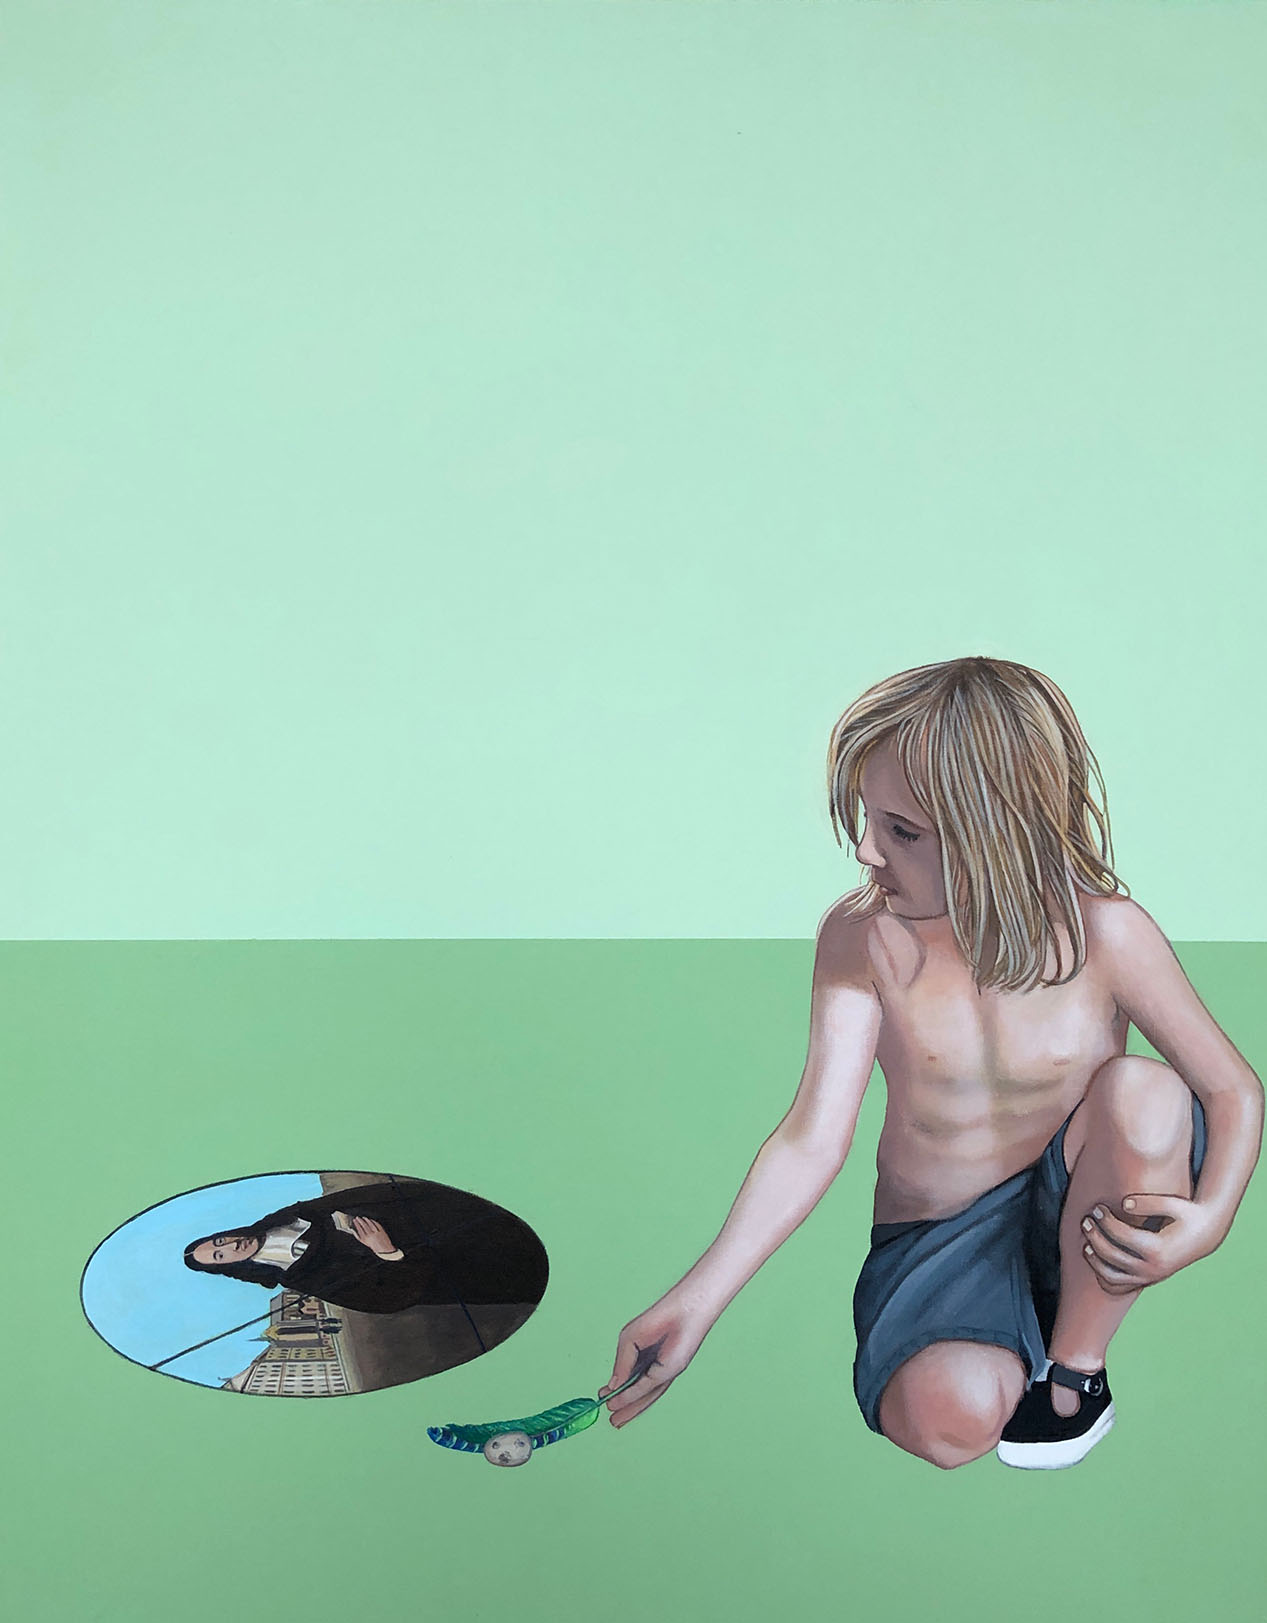 Cristina Ruiz Guinazu, Les causes extérieures, acrylics on canvas, 92 x 73 cm, 2019